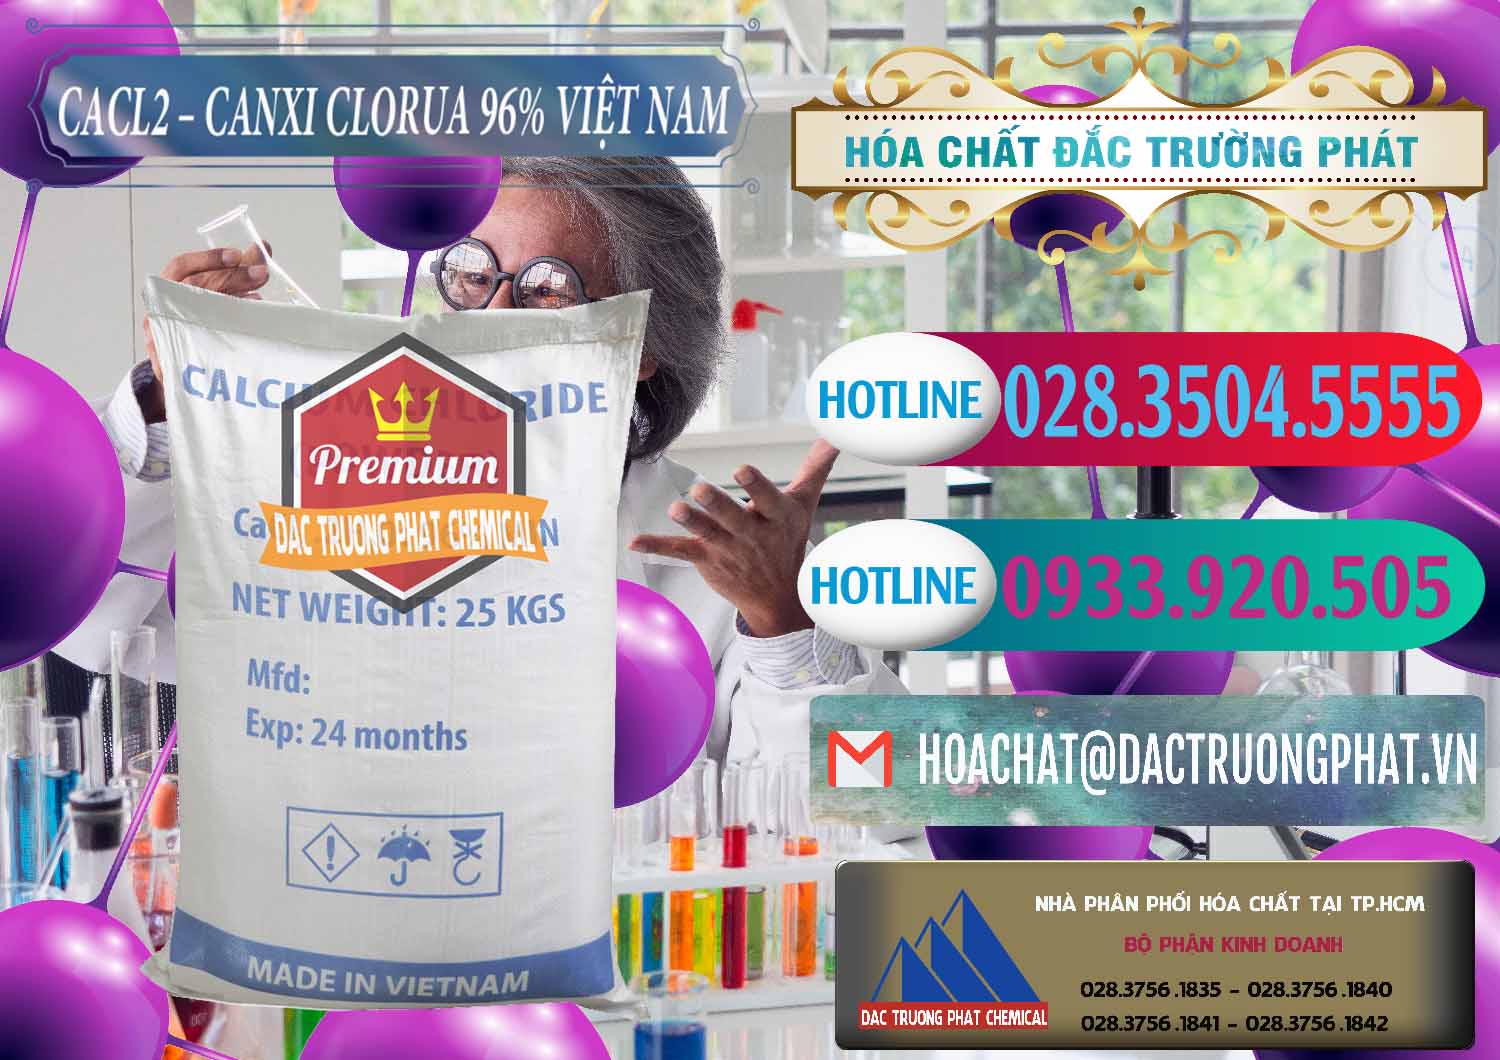 Công ty phân phối & bán CaCl2 – Canxi Clorua 96% Việt Nam - 0236 - Đơn vị chuyên cung cấp & bán hóa chất tại TP.HCM - truongphat.vn